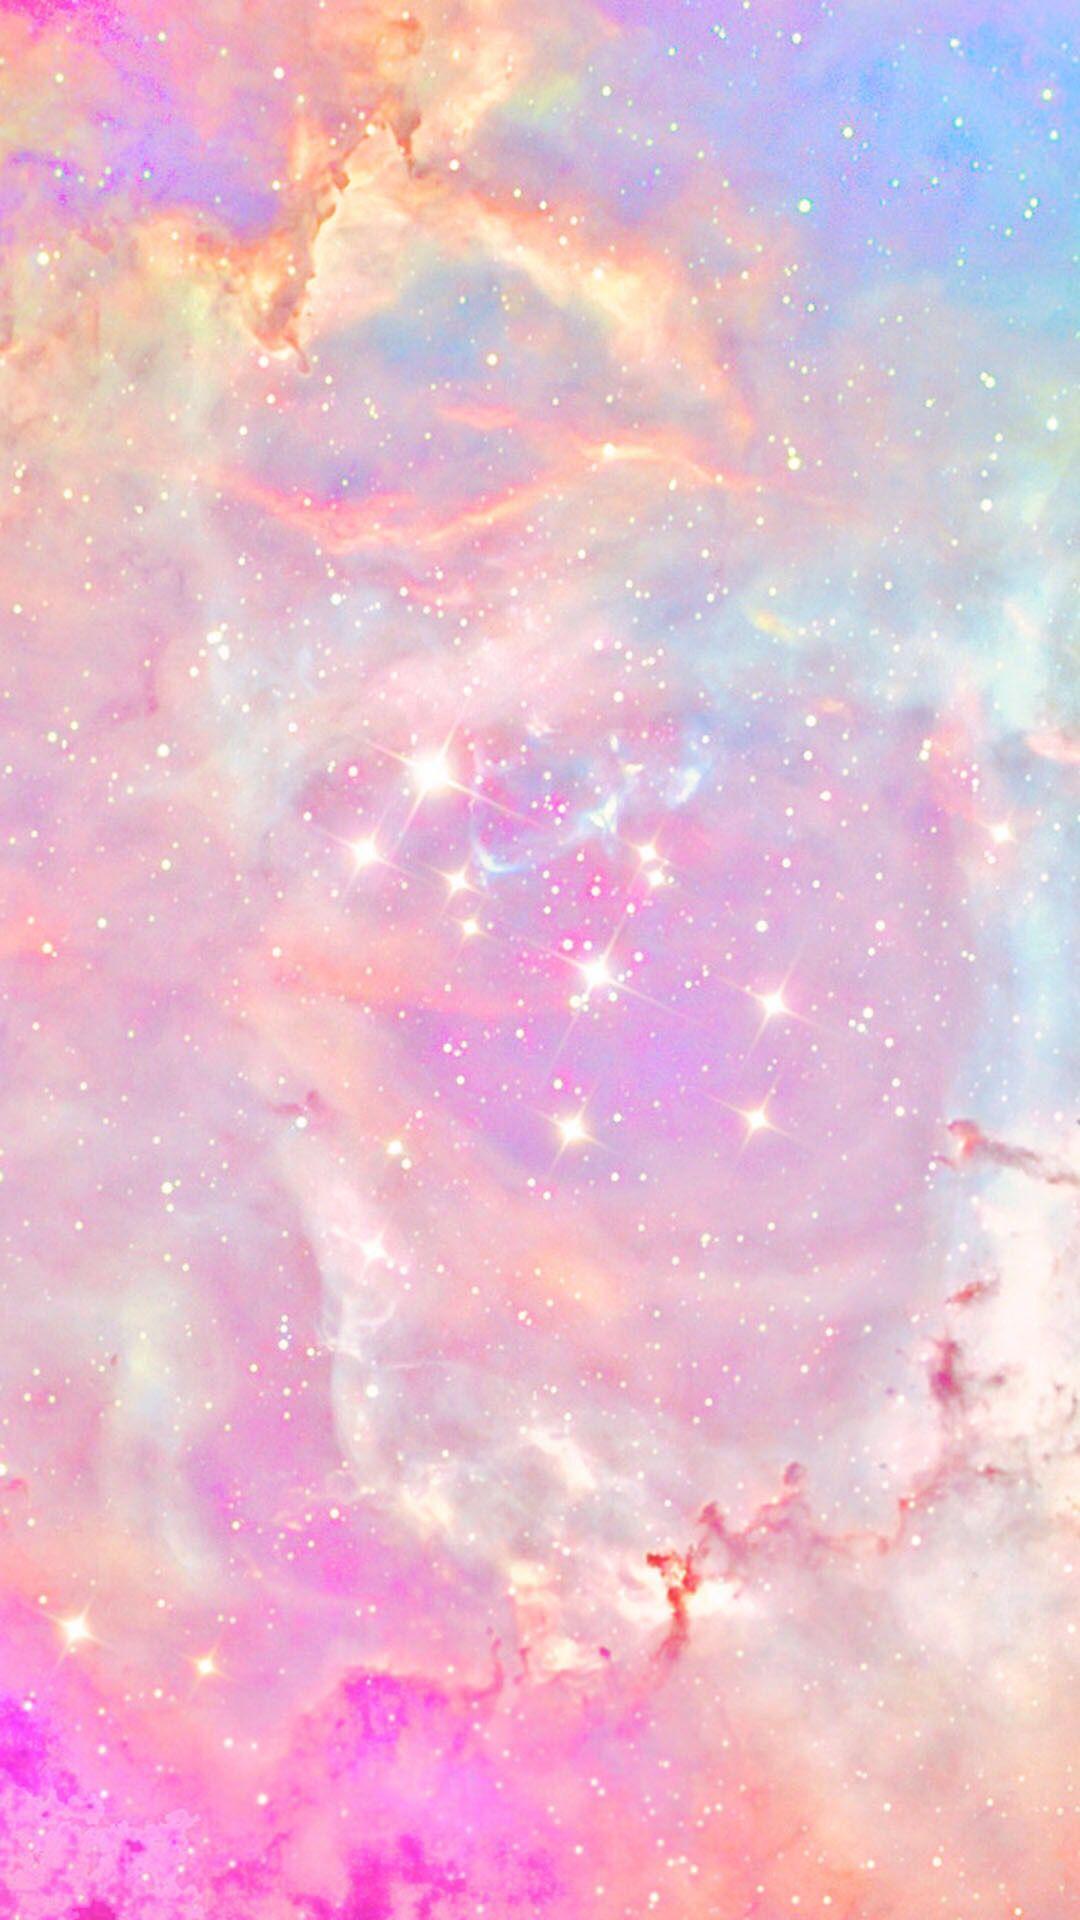 Cùng chiêm ngưỡng hình ảnh đẹp của Pink Galaxy, với những ánh sao lấp lánh rực rỡ trên nền tối đen, sẽ giúp bạn tìm lại niềm yêu thích với không gian bao la vô tận. Hãy đến và khám phá!